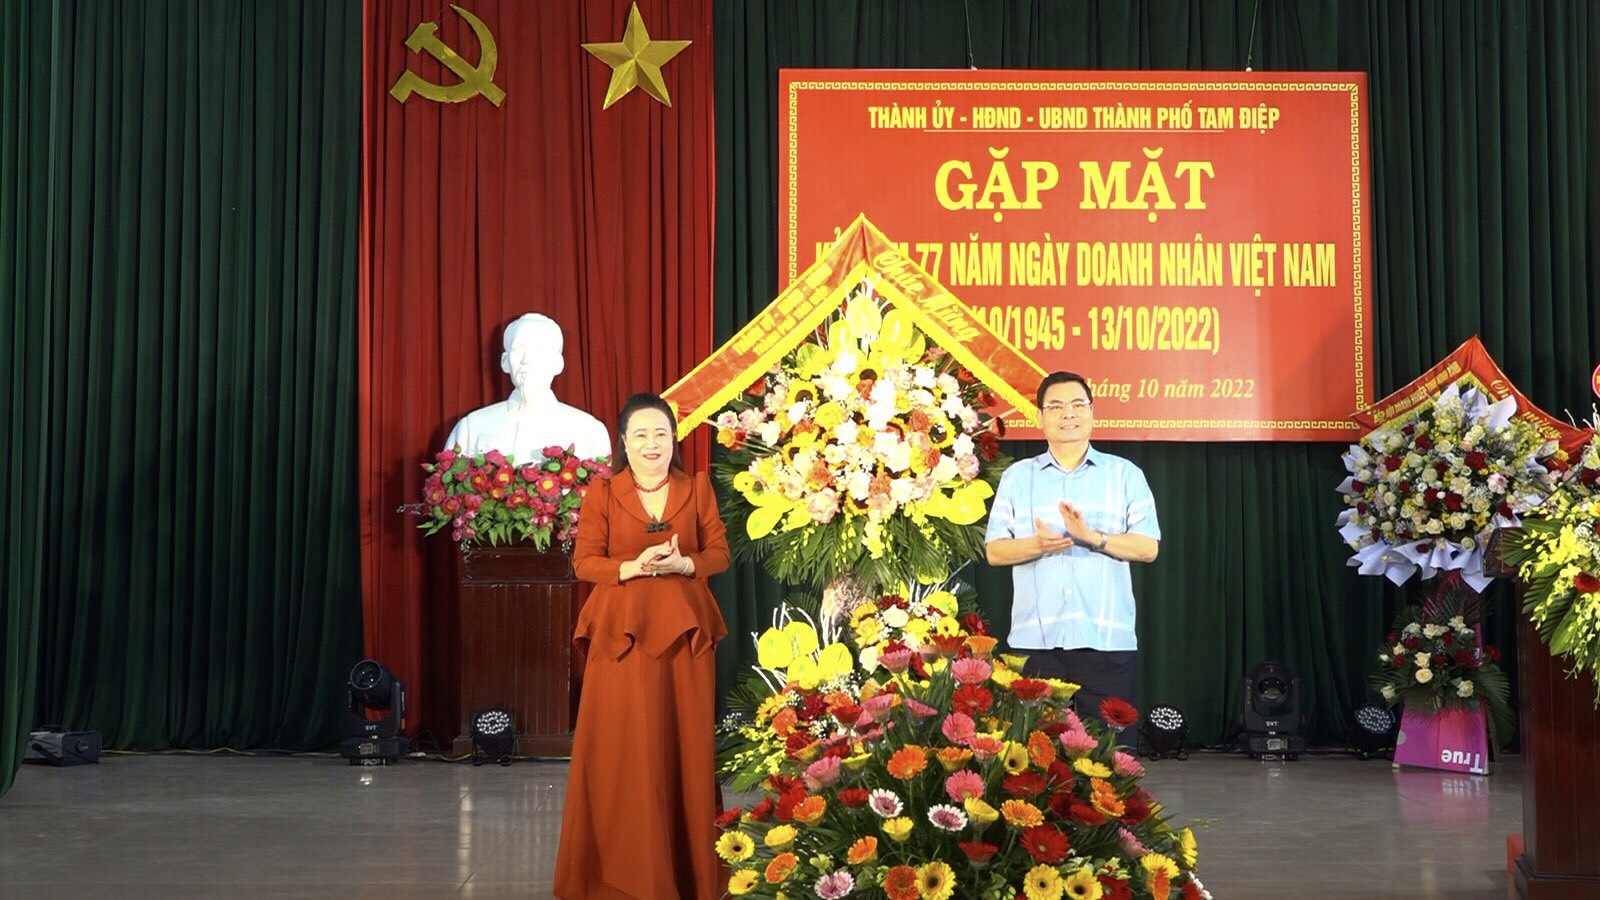 Gặp mặt kỷ niệm 77 năm Ngày Doanh nhân Việt Nam (13/10/1945 - 13/10/2022)